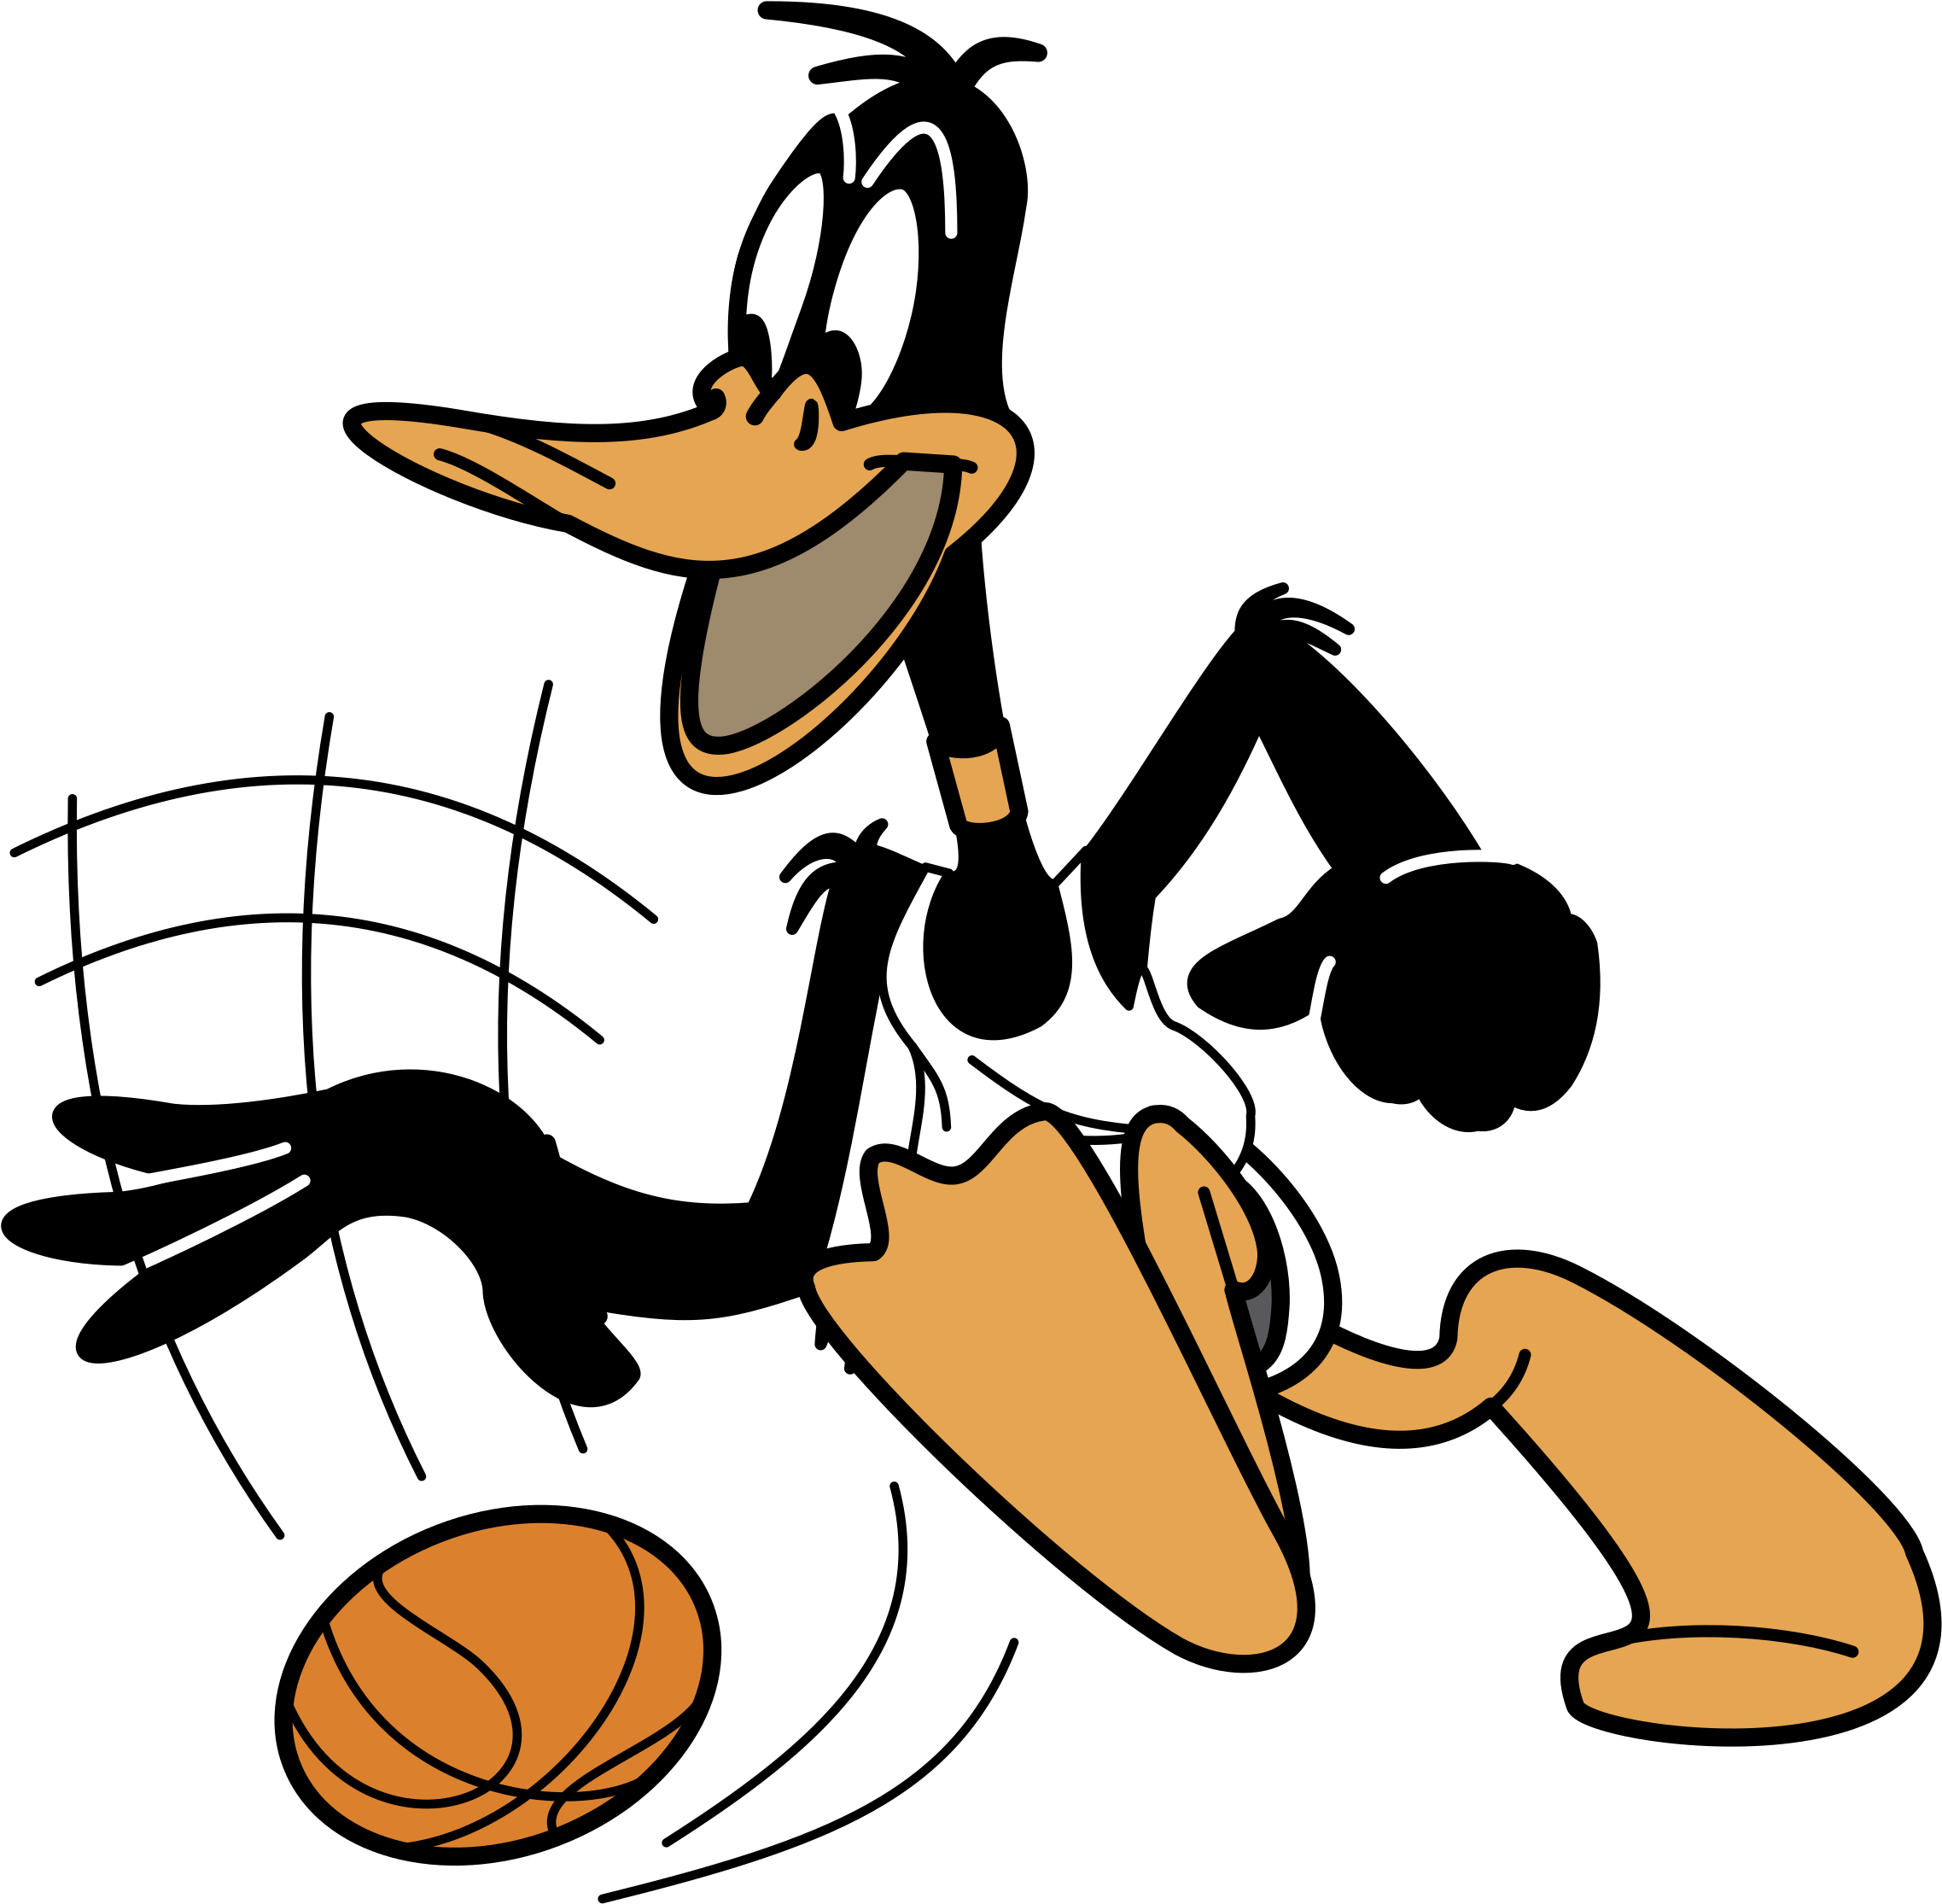 Download Warner Bros Logo Png Transparent - Daffy Duck Basketball PNG Image...